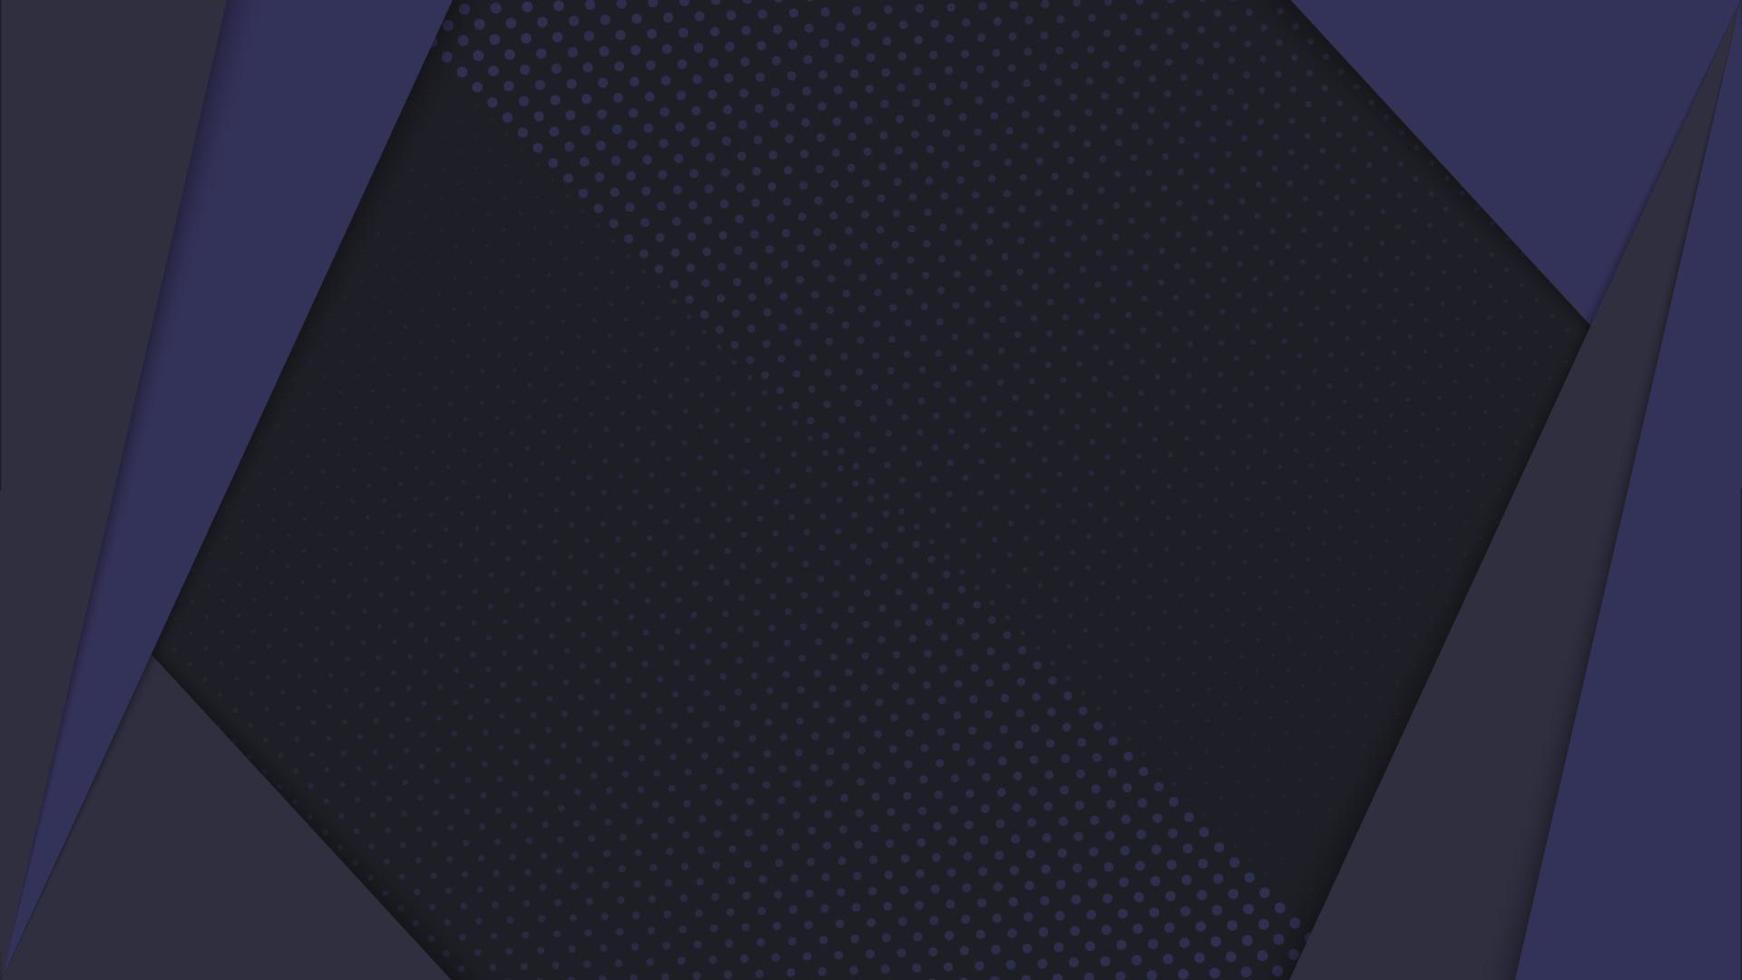 fondo moderno abstracto superpuesto en negro y azul con decoración triangular superpuesta. decoración de textura de fondo de punto pequeño. adecuado para fondos, fondos de pantalla, pancartas, sitios web. eps 10 vector